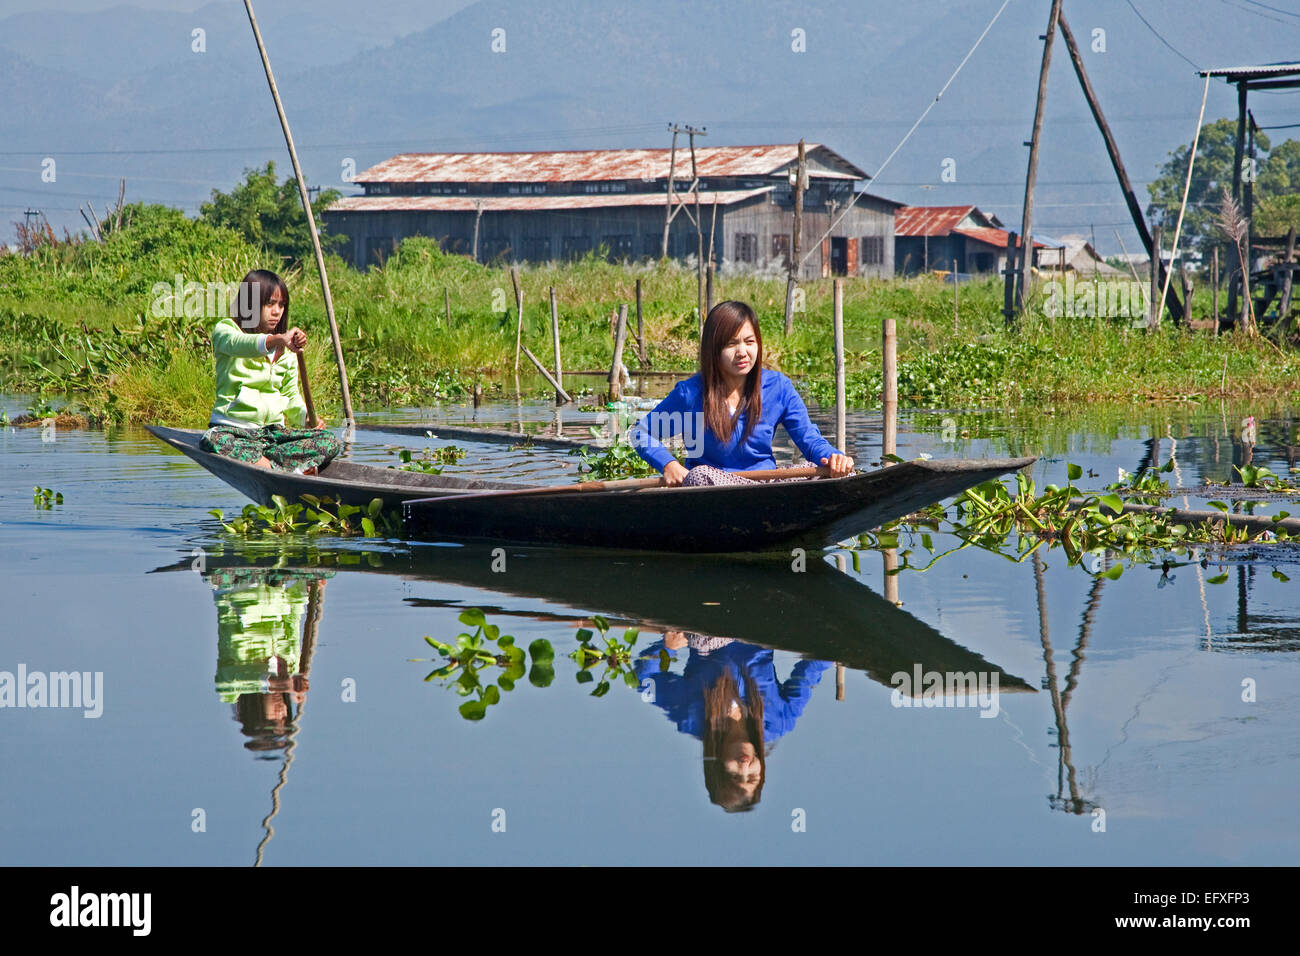 Zwei Intha-Frauen Rudern in einem traditionellen Holzboot offen / Einbaum / Proa am Inle-See, Nyaungshwe, Shan State in Myanmar / Birma Stockfoto